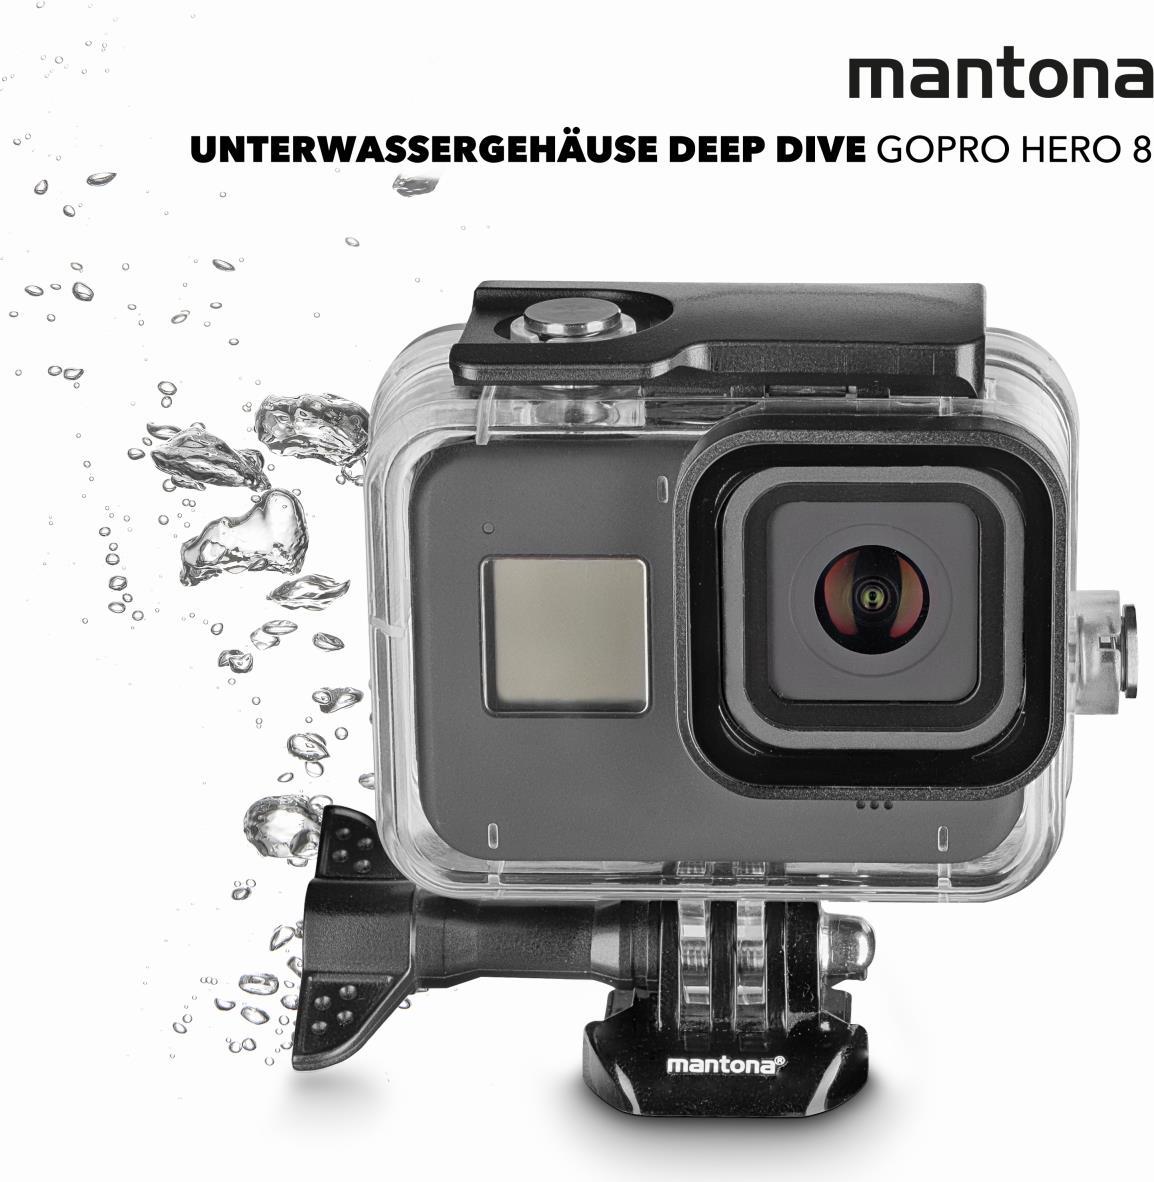 Mantona Unterwassergehäuse Deep Dive GoPro Hero 8 (22979)